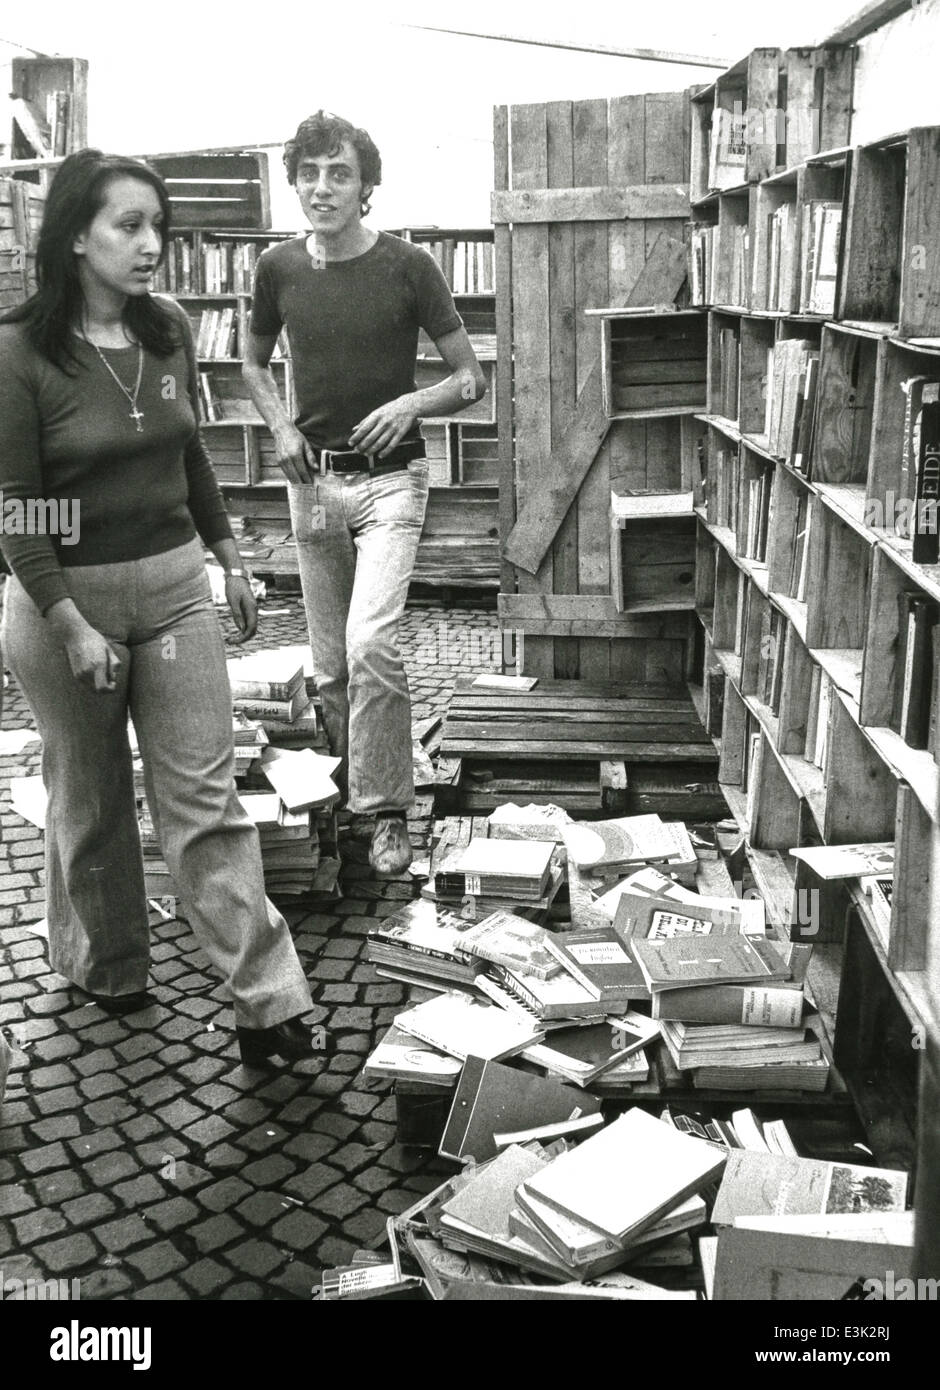 Los jóvenes en una tienda de libros usados,Milán,60's Foto de stock